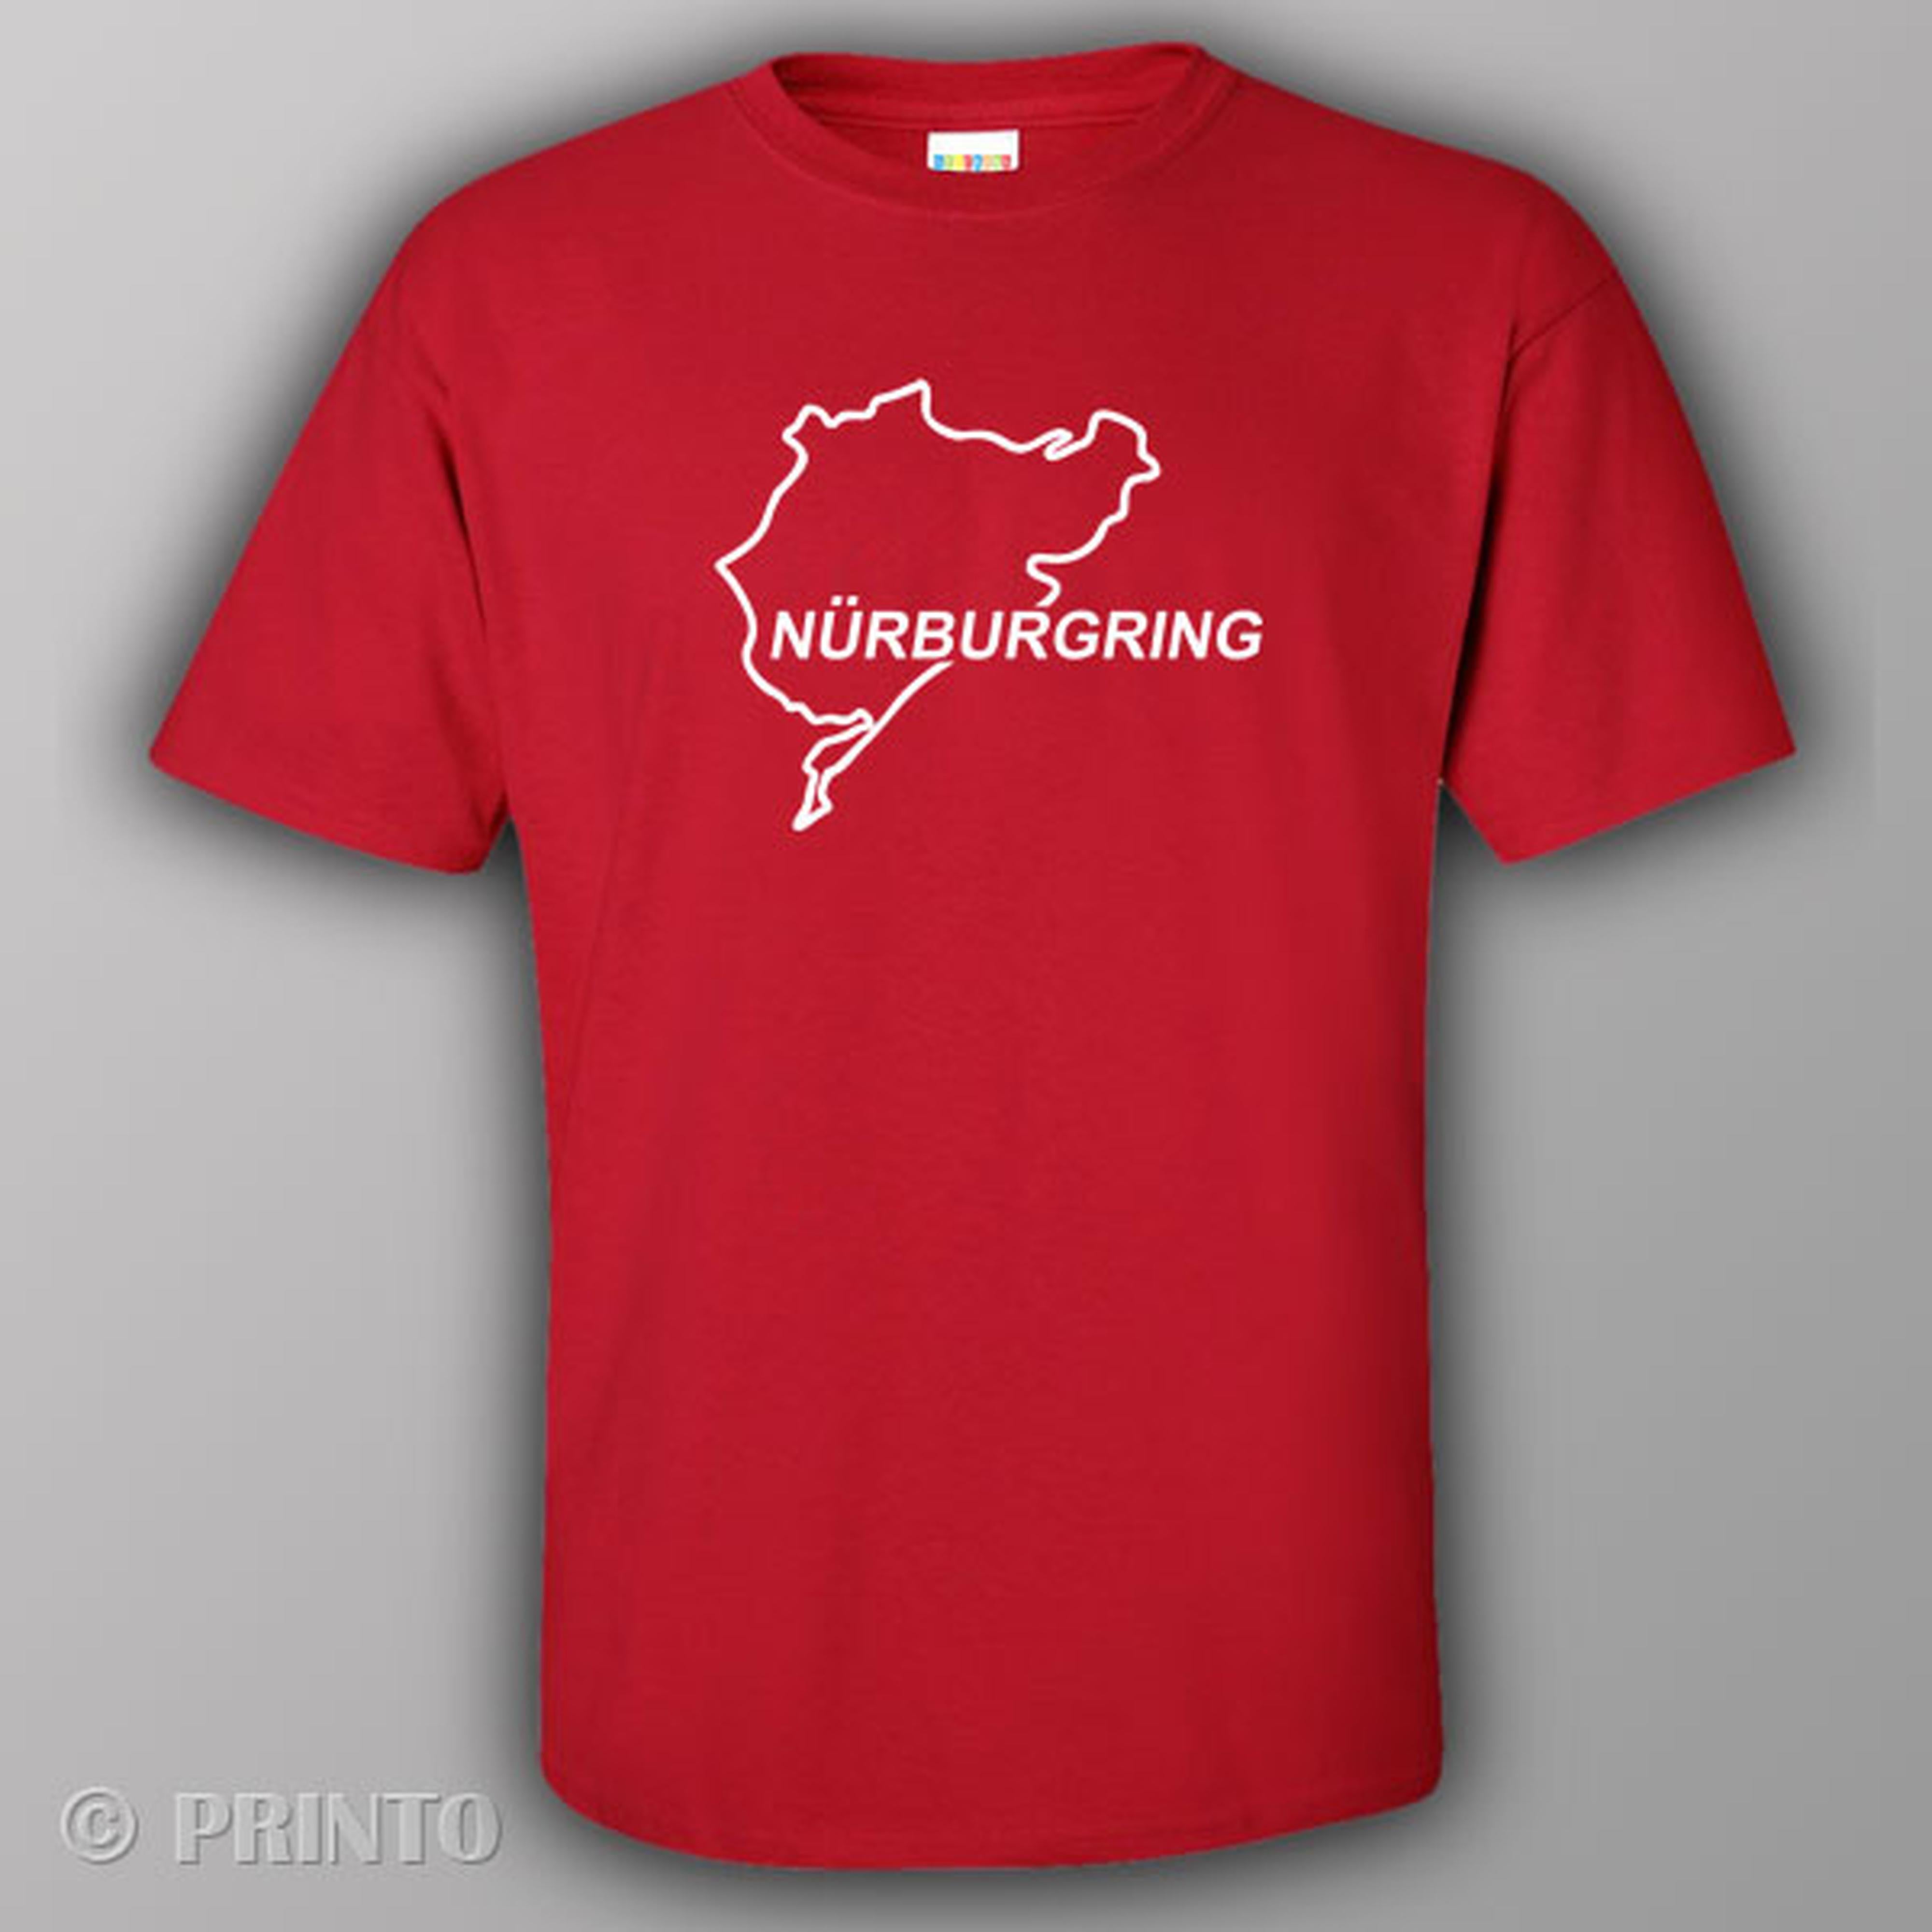 nurburgring-t-shirt